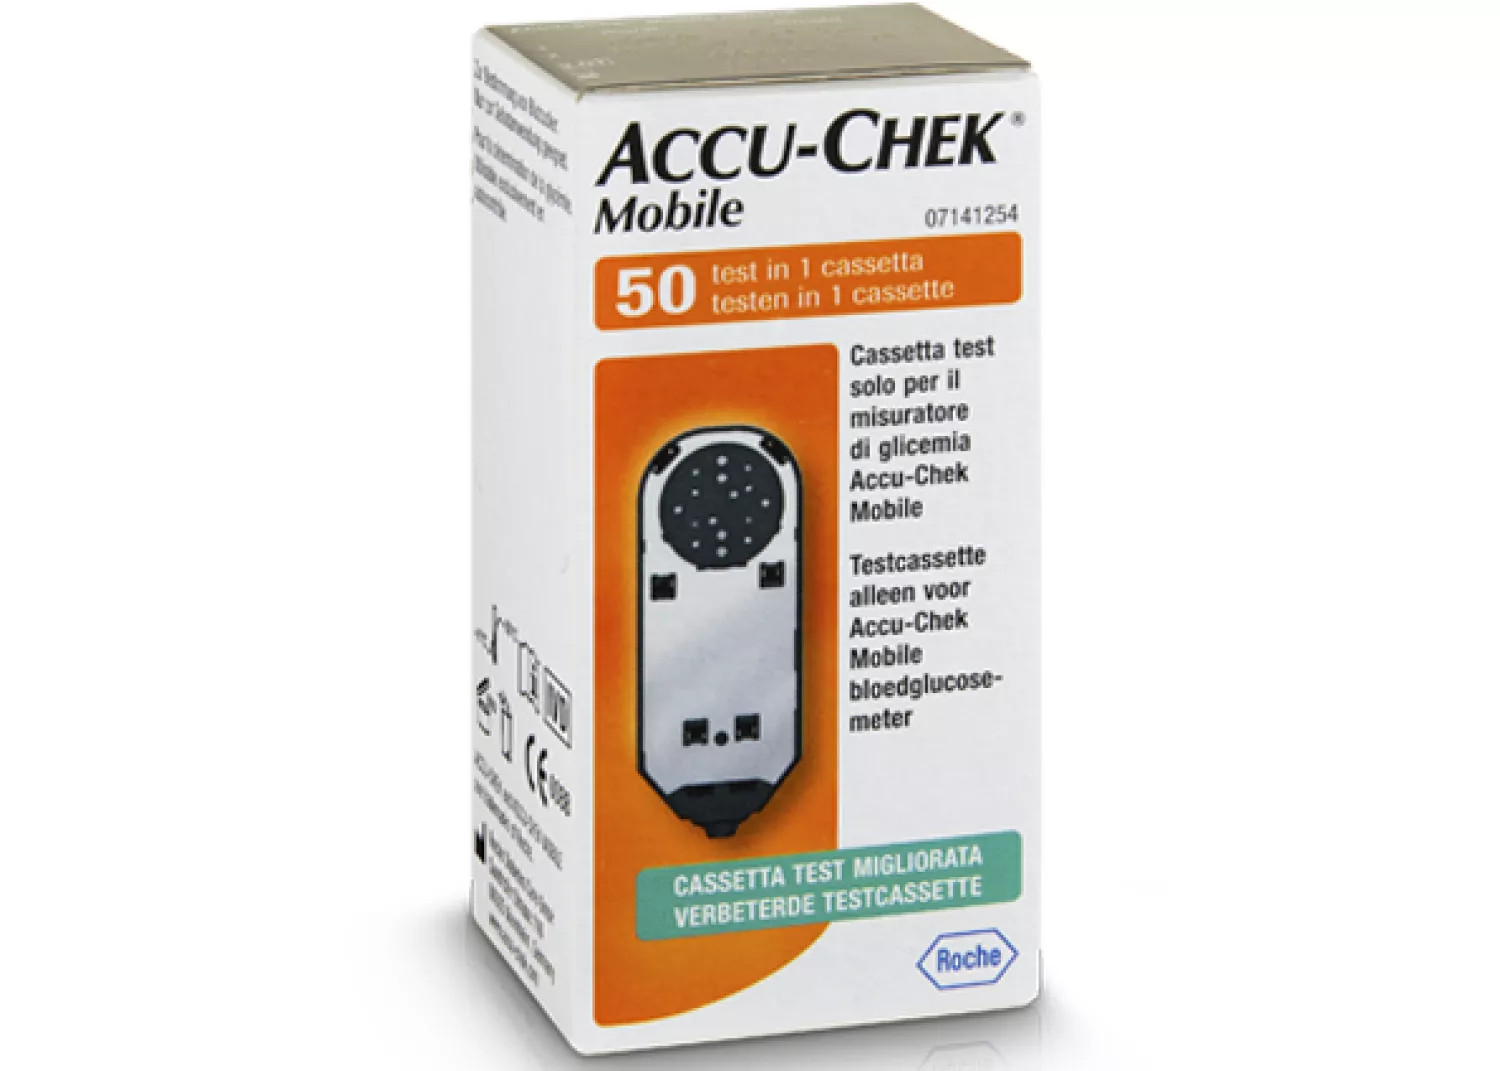 Medewerker spleet spreker ACCU-CHEK Mobile testcassette (50 tests) - Goed thuiszorgwinkel